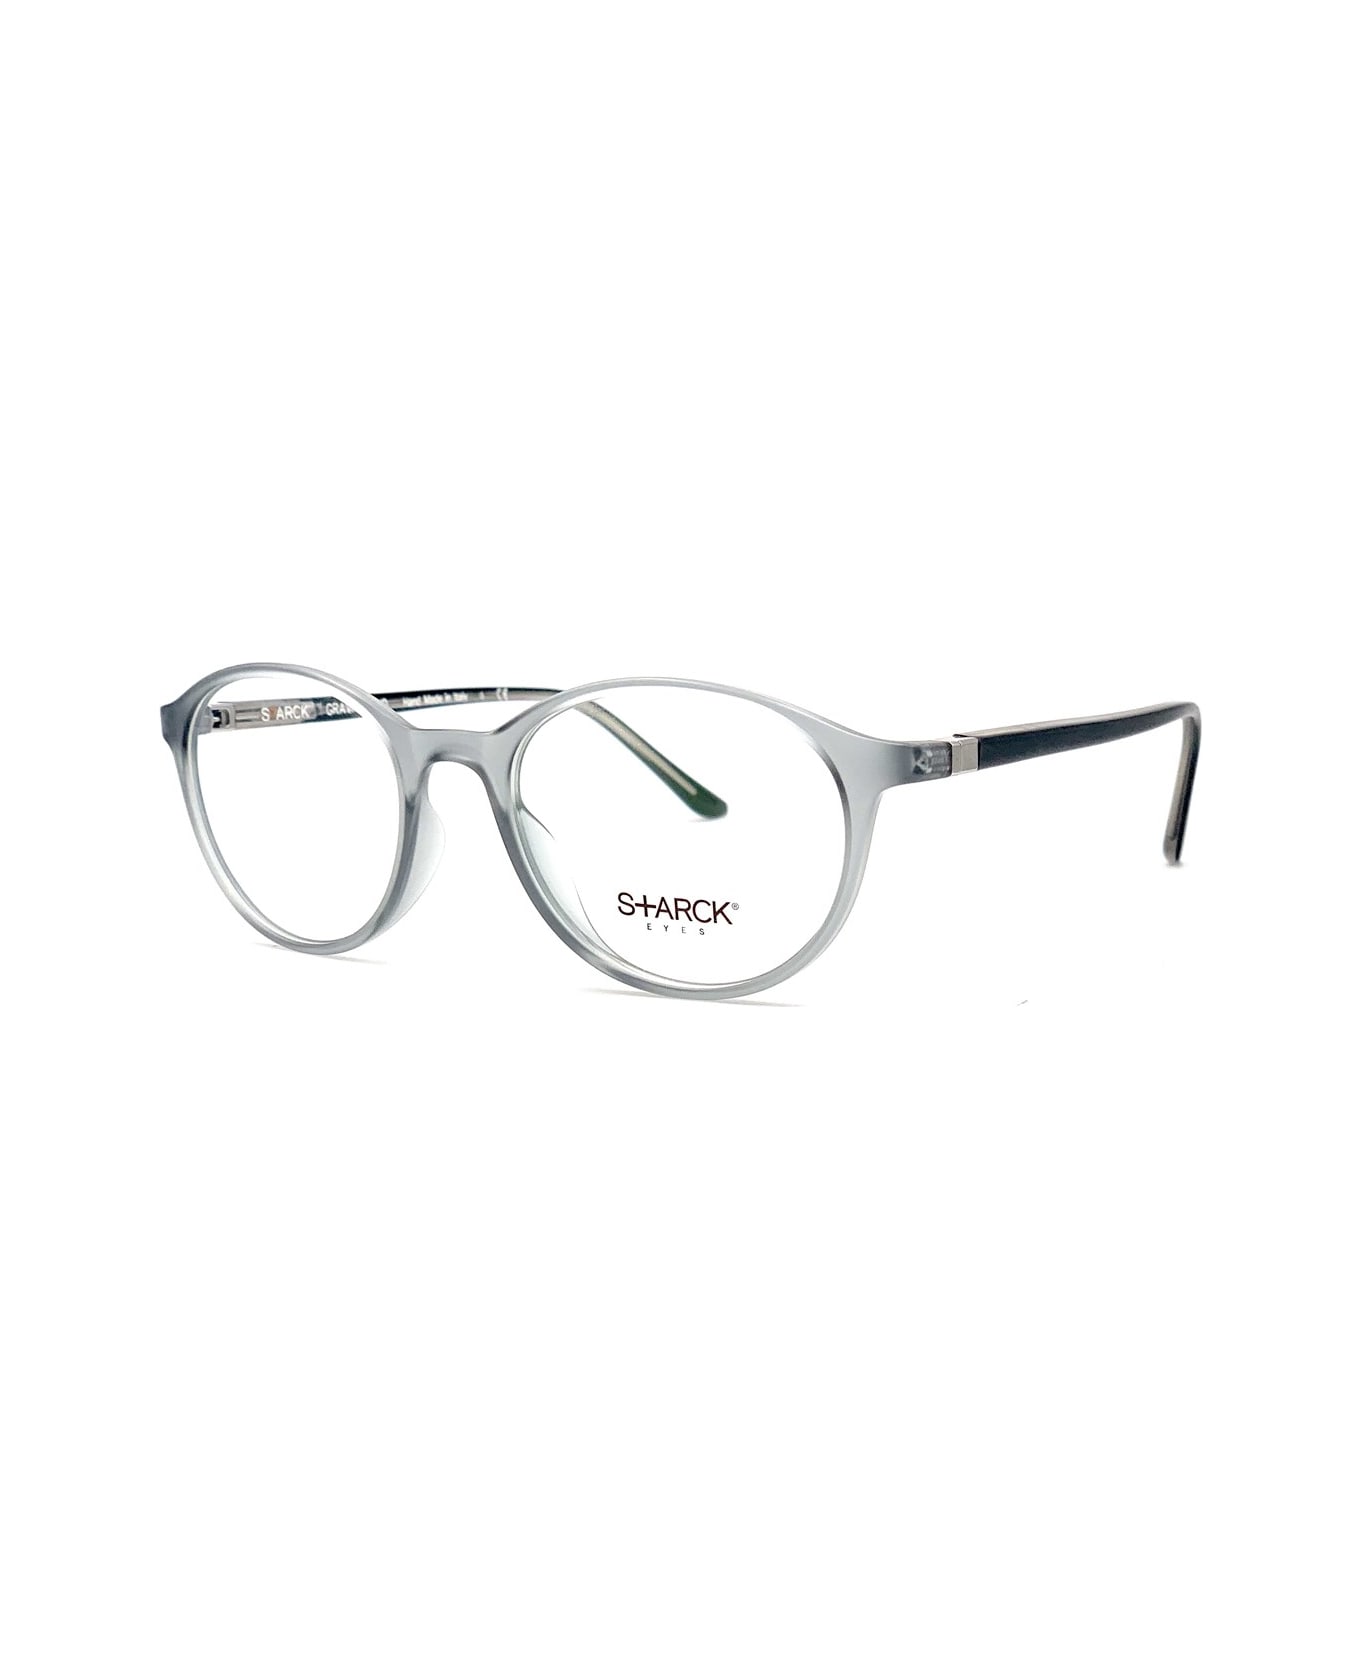 Philippe Starck 3007x Vista Glasses - Grigio